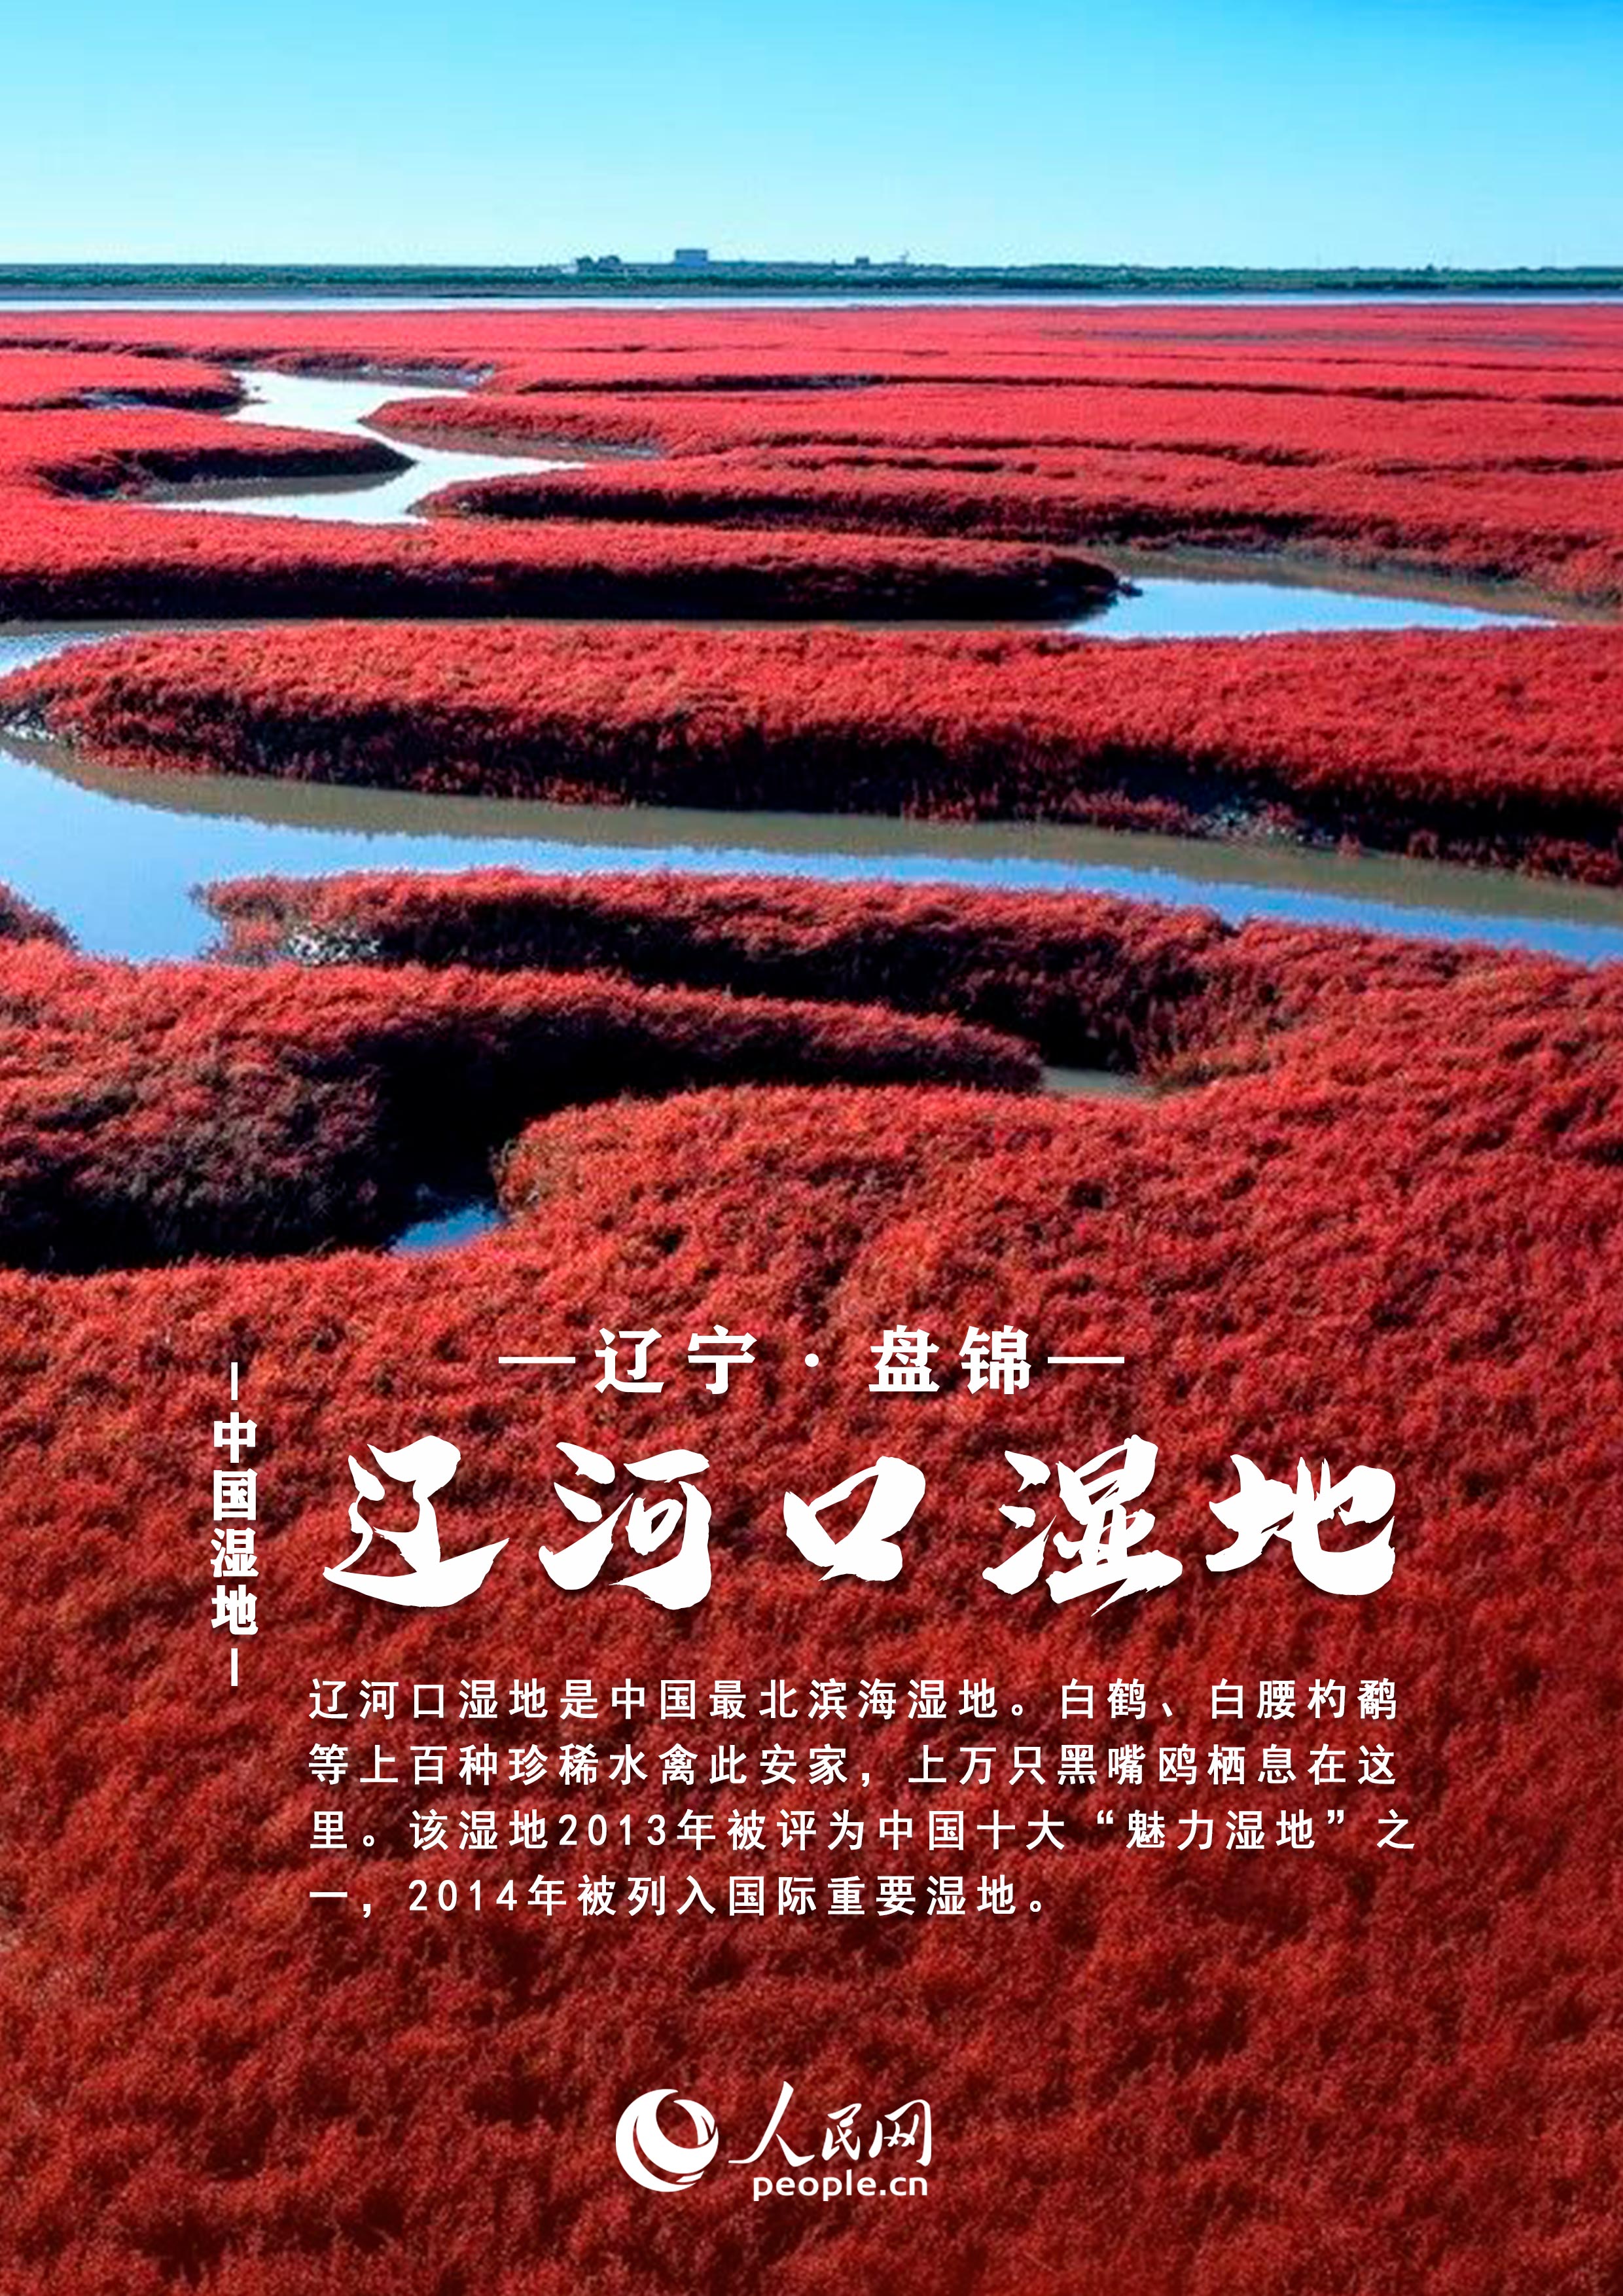 中国湿地大赏丨邀你共赏绝美风光 每张都值得收藏！